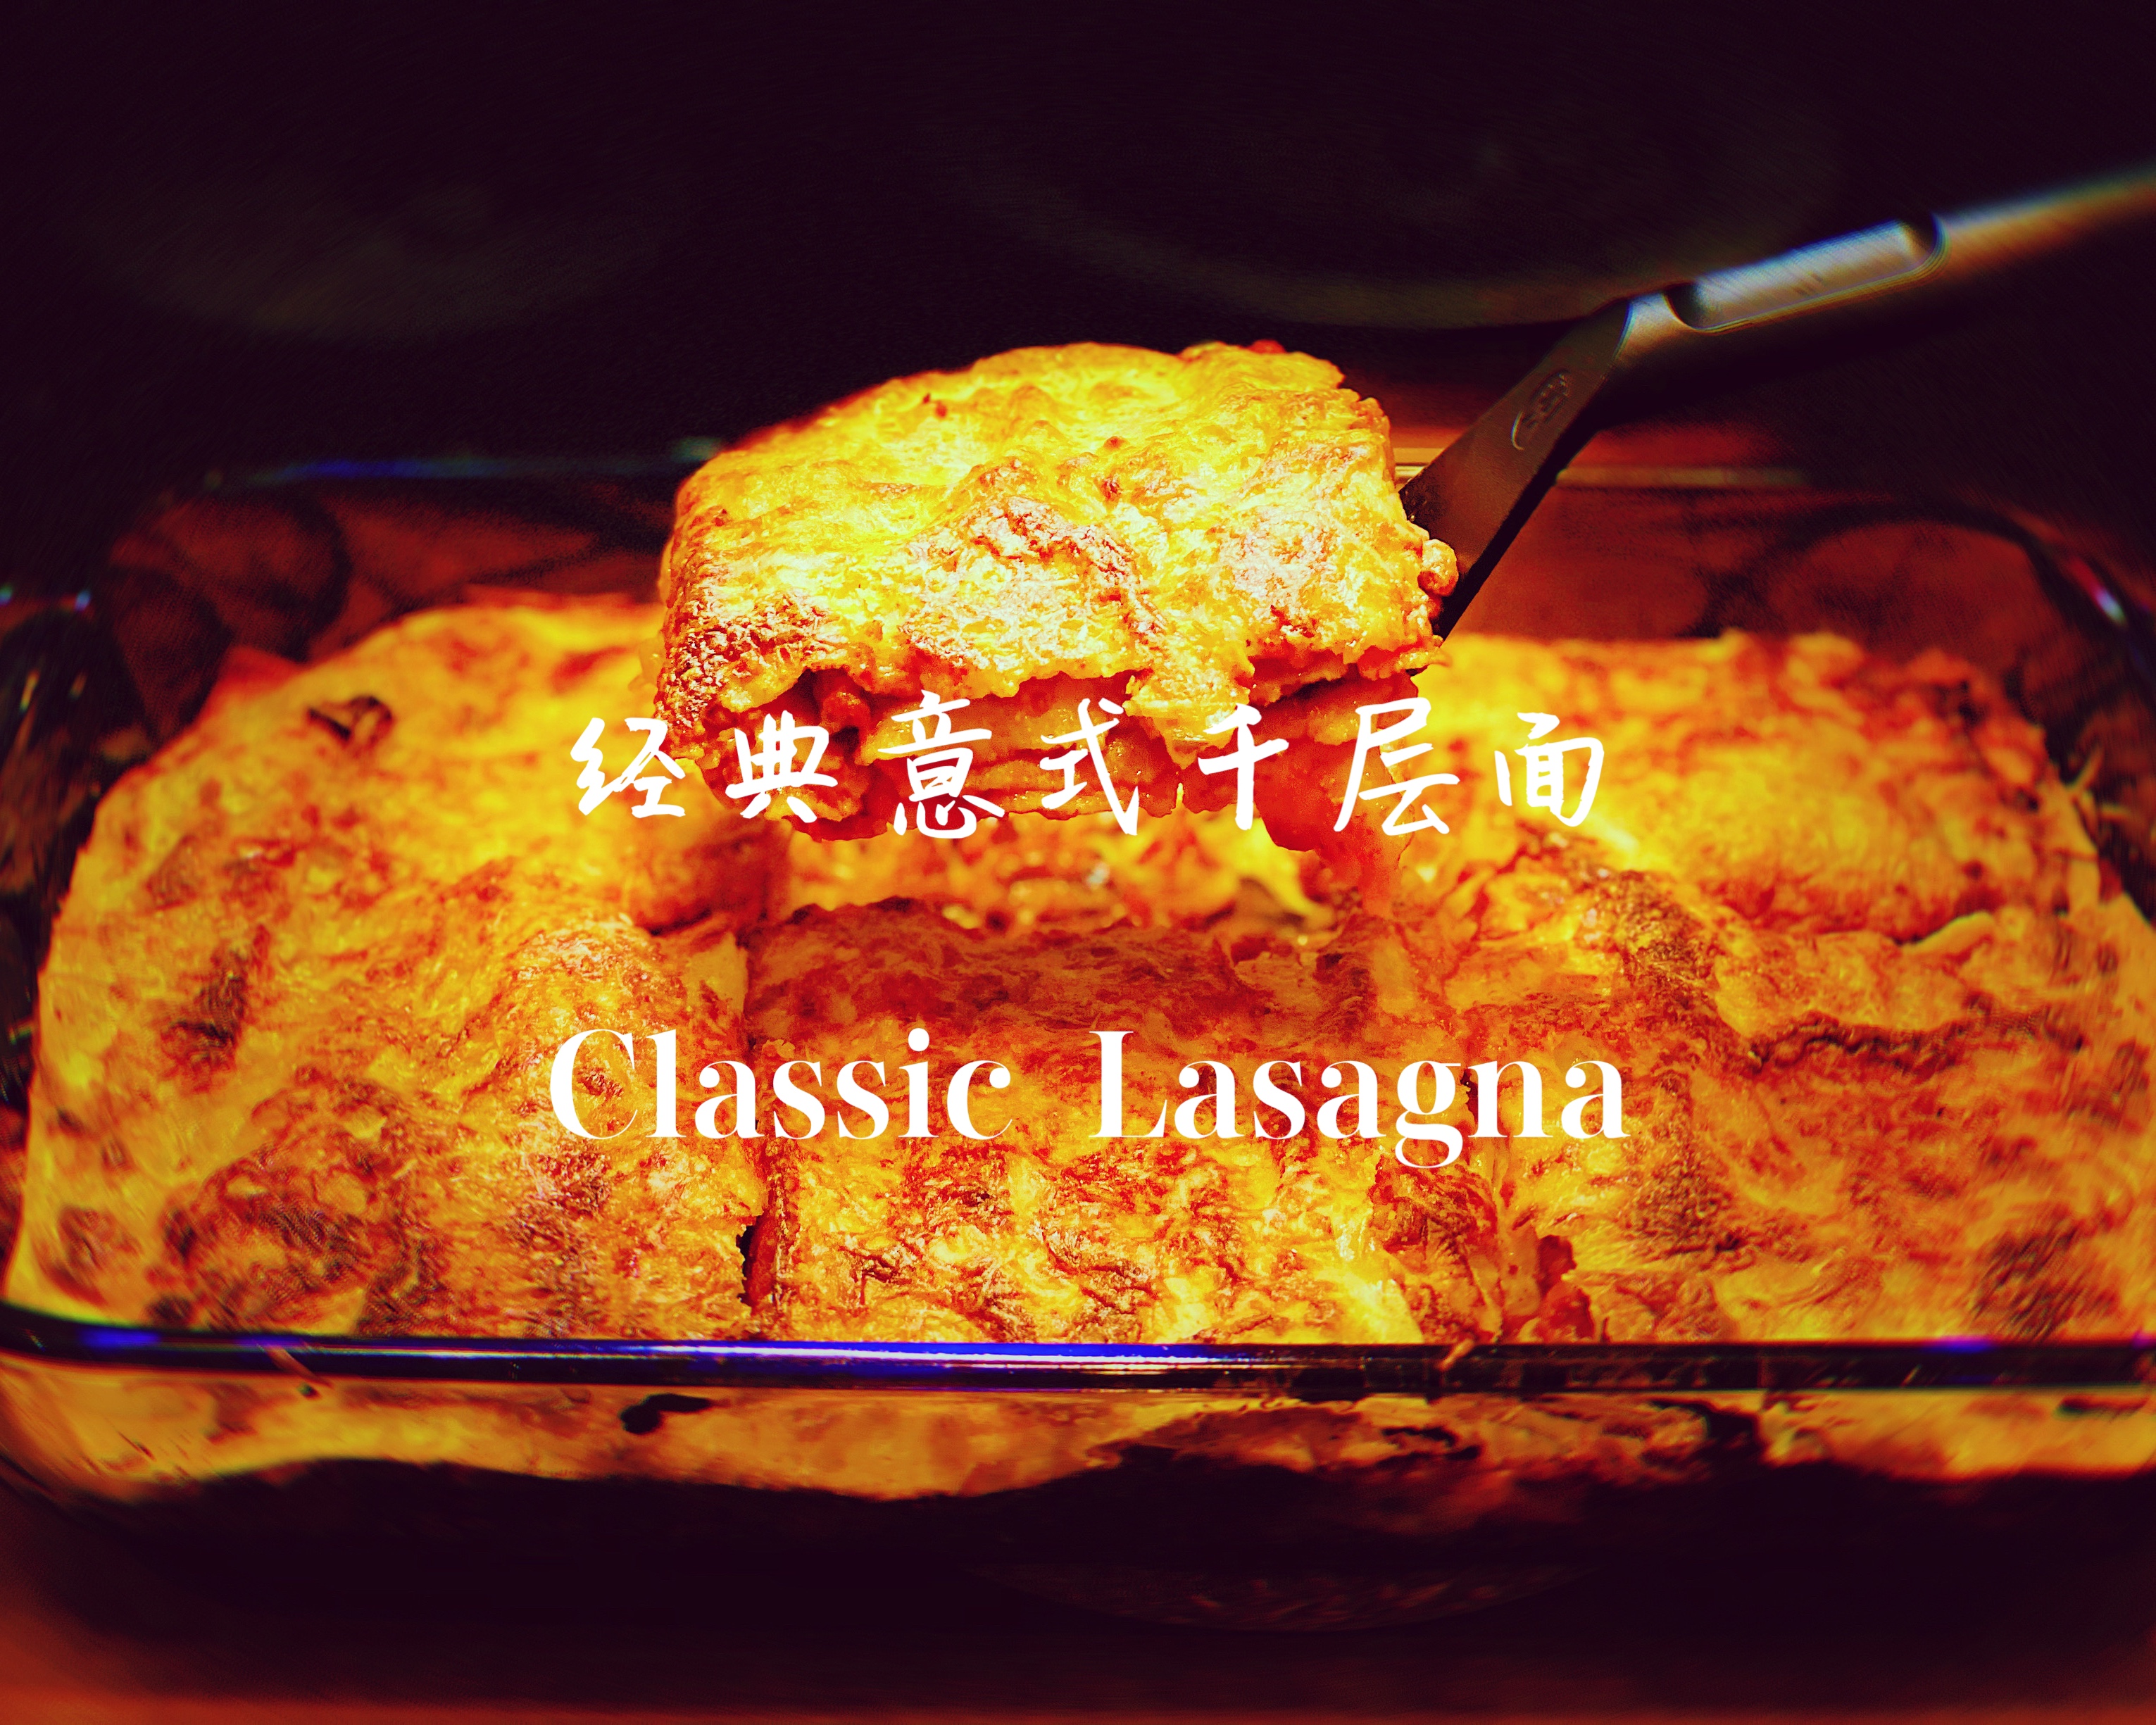 超好吃的经典意式千层面 Classic Lasagna (快捷简易版）